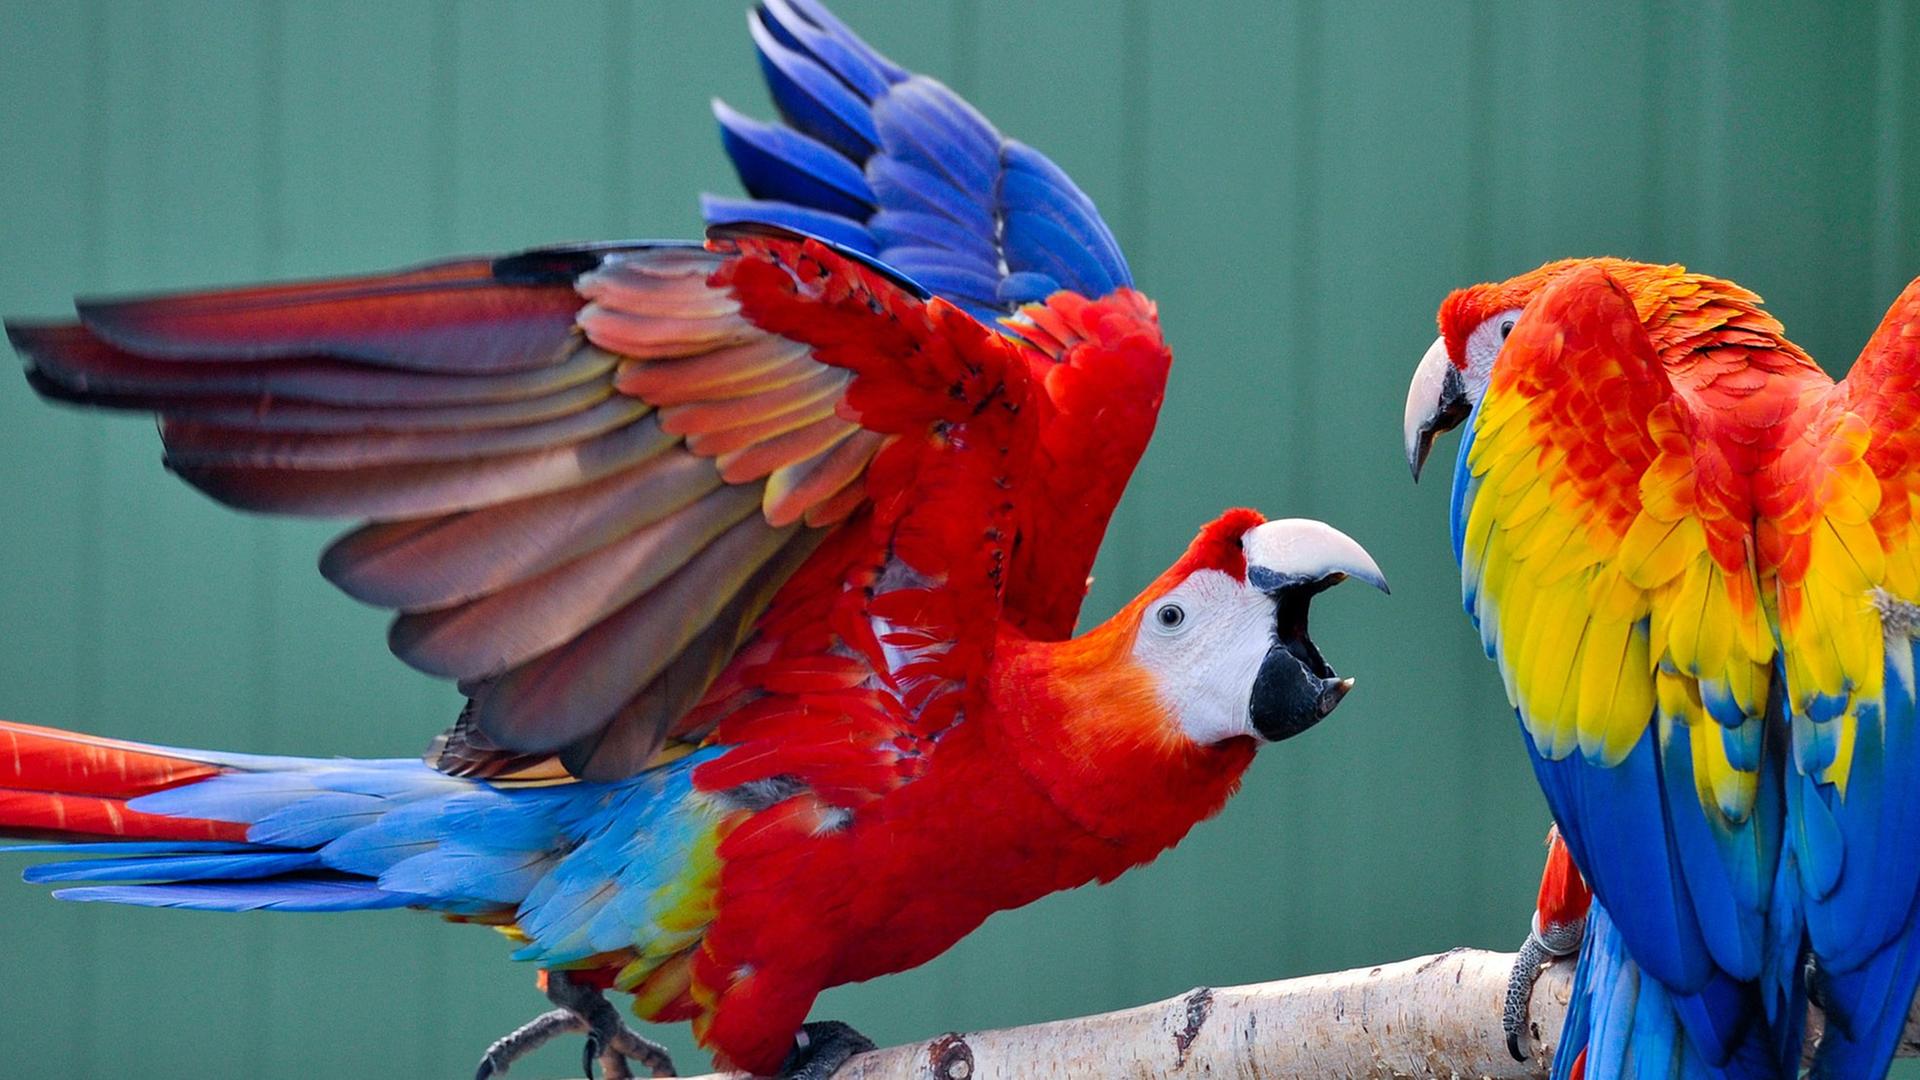 Zwei Hellrote Aras (lat. Ara macao) - auch Arakanga genannt. Eine Papageienart aus der Gattung der Eigentlichen Aras.